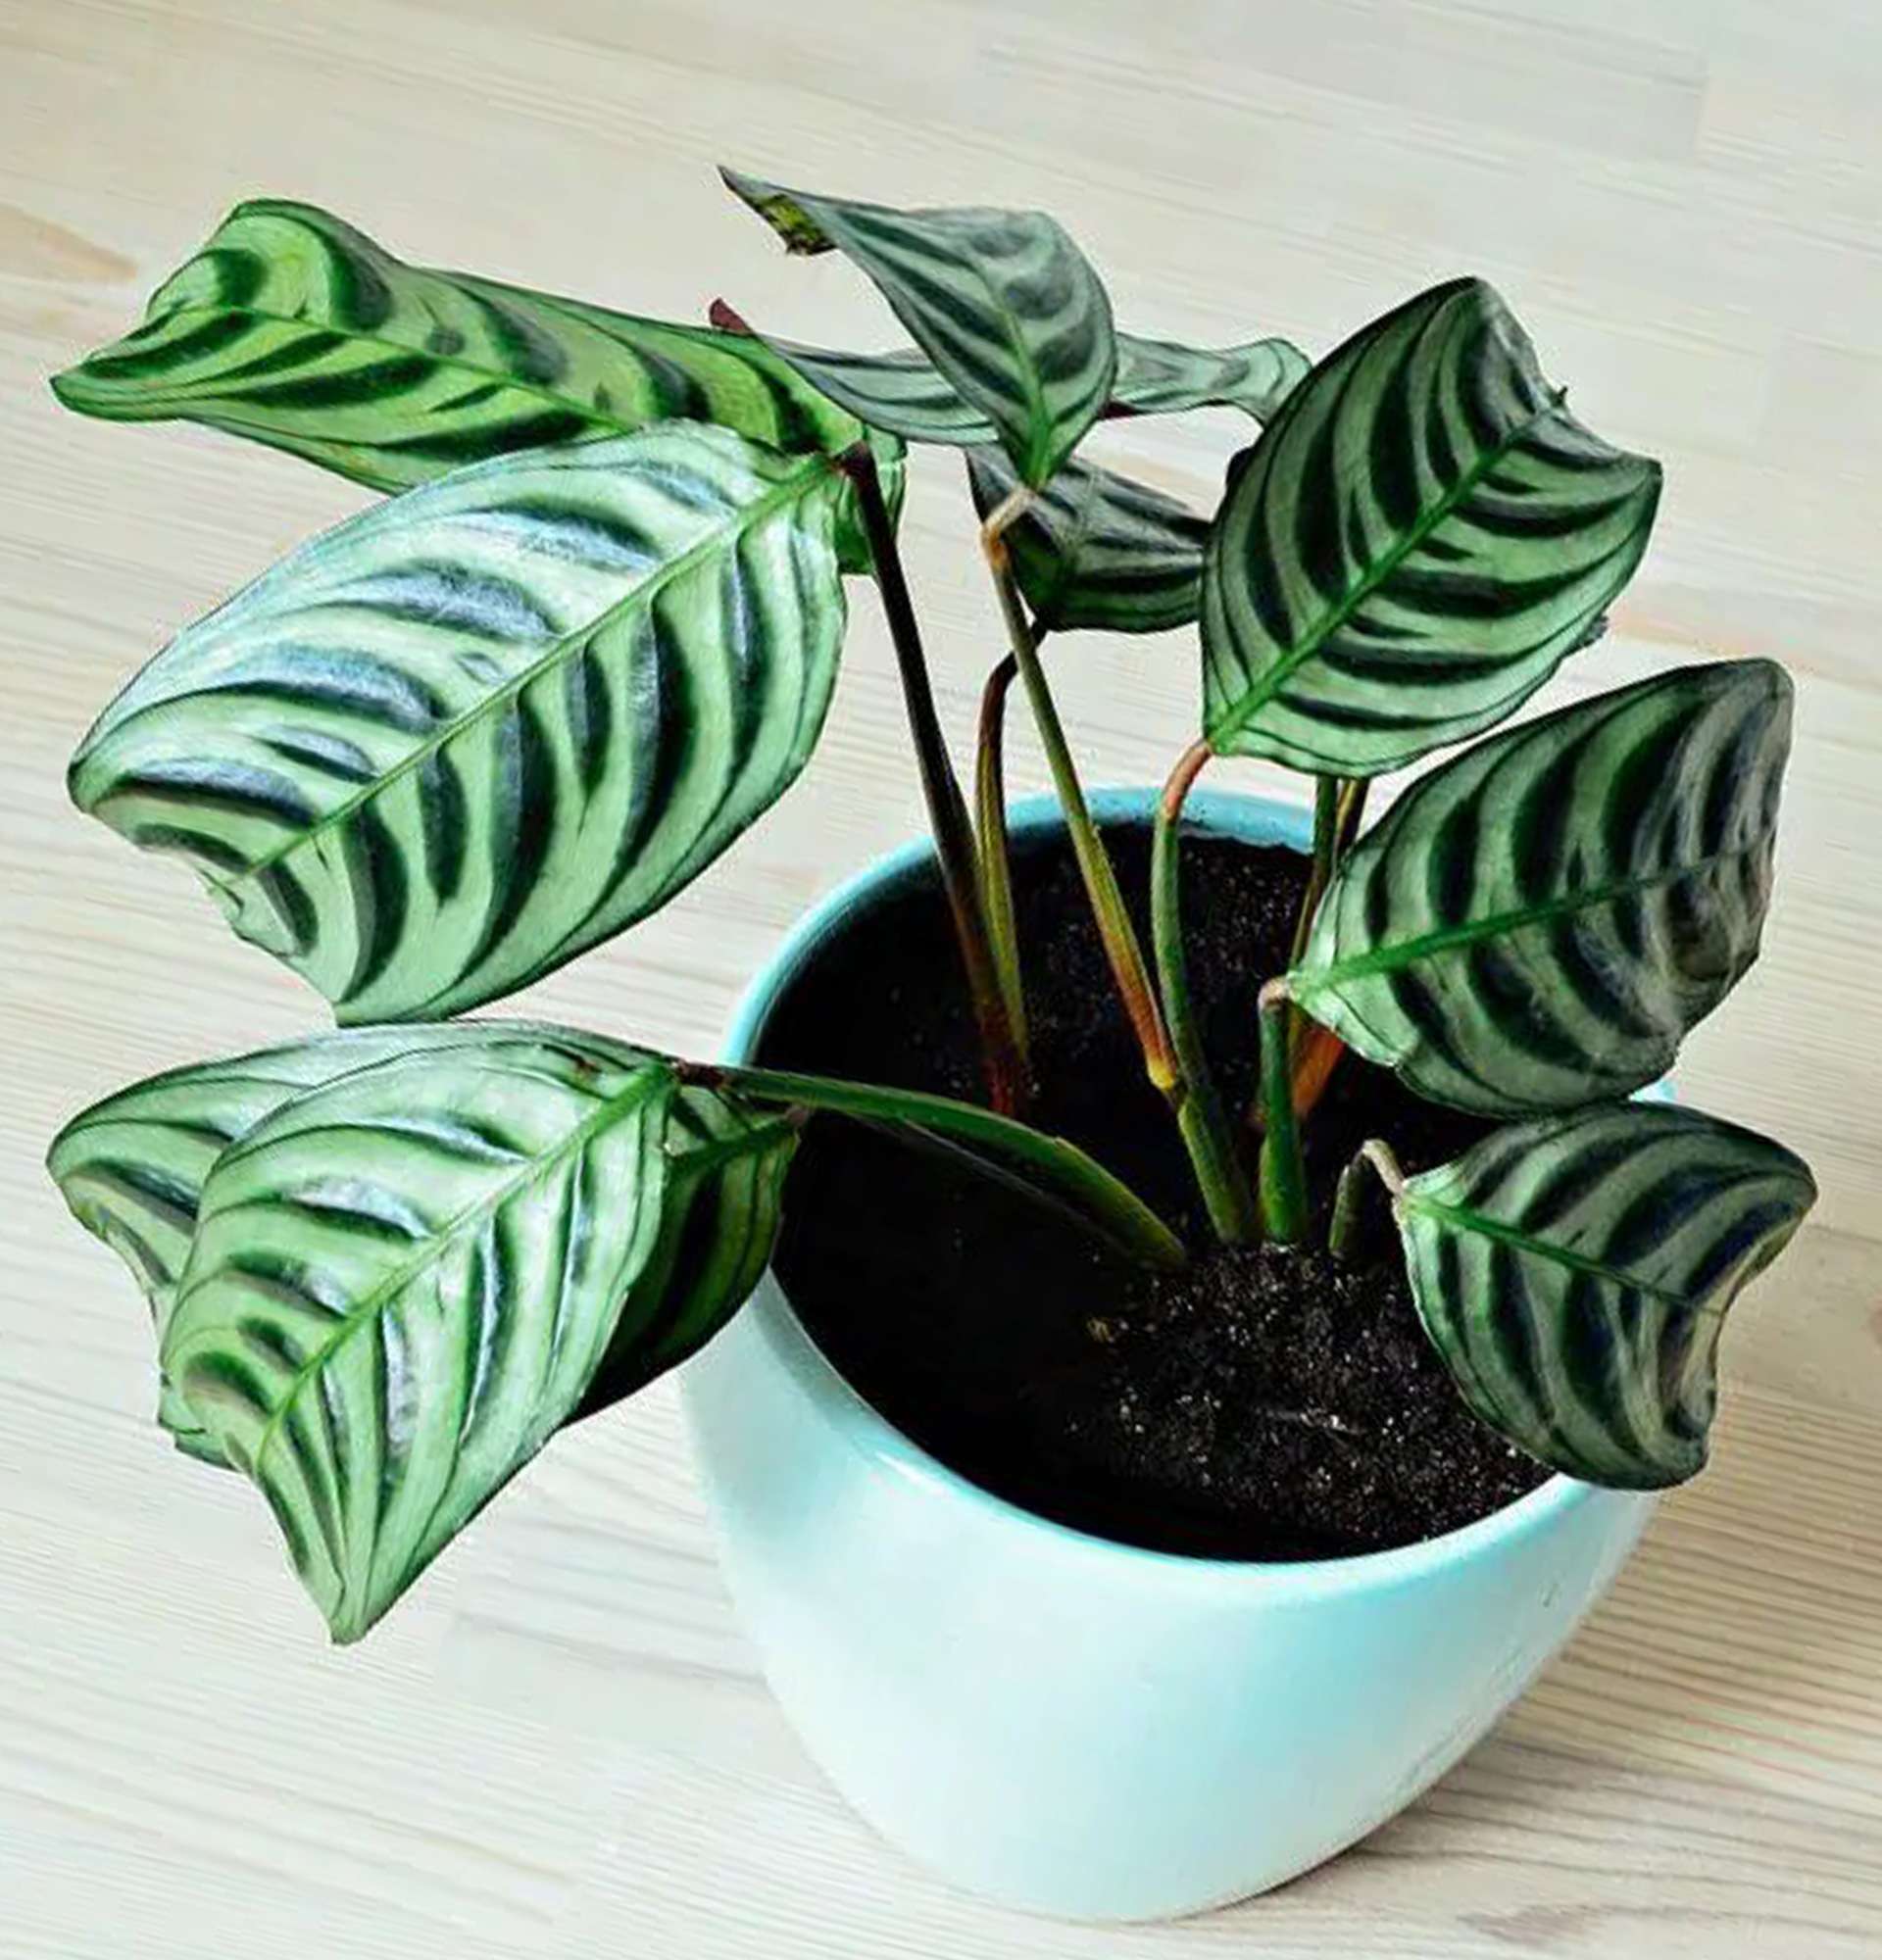  ктенанта - комнатное растение с бело-зелеными листьями